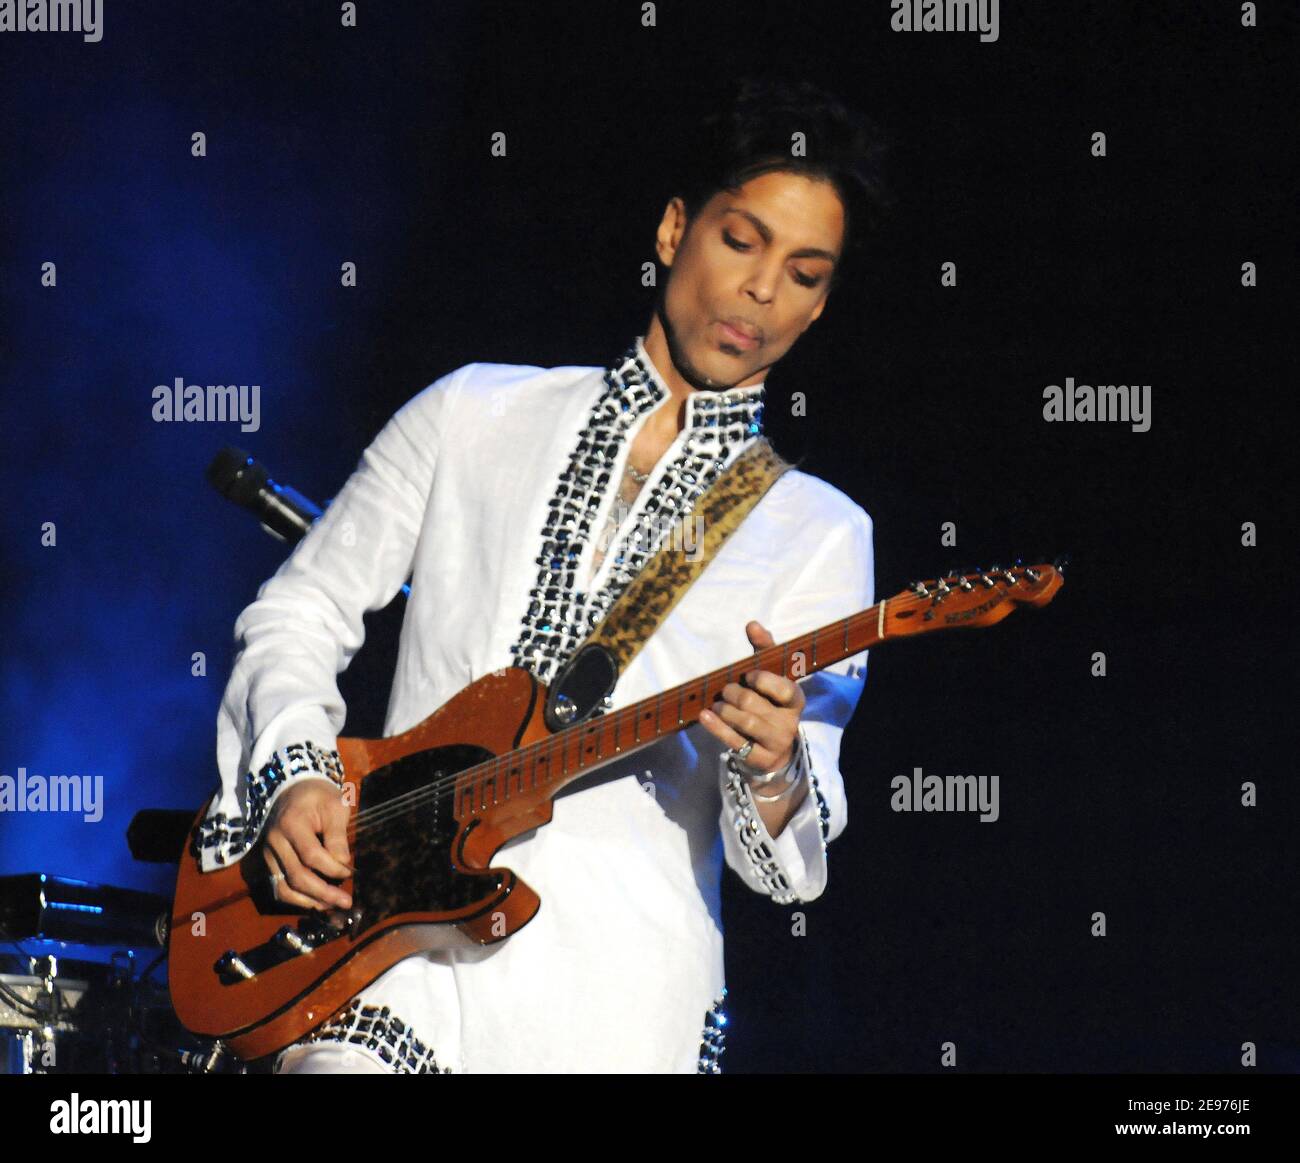 Prince si esibisce dal vivo al festival musicale Coachella 2008 a Indio, California, il 26 aprile 2008. Credito: Atlas/MediaPunch Foto Stock